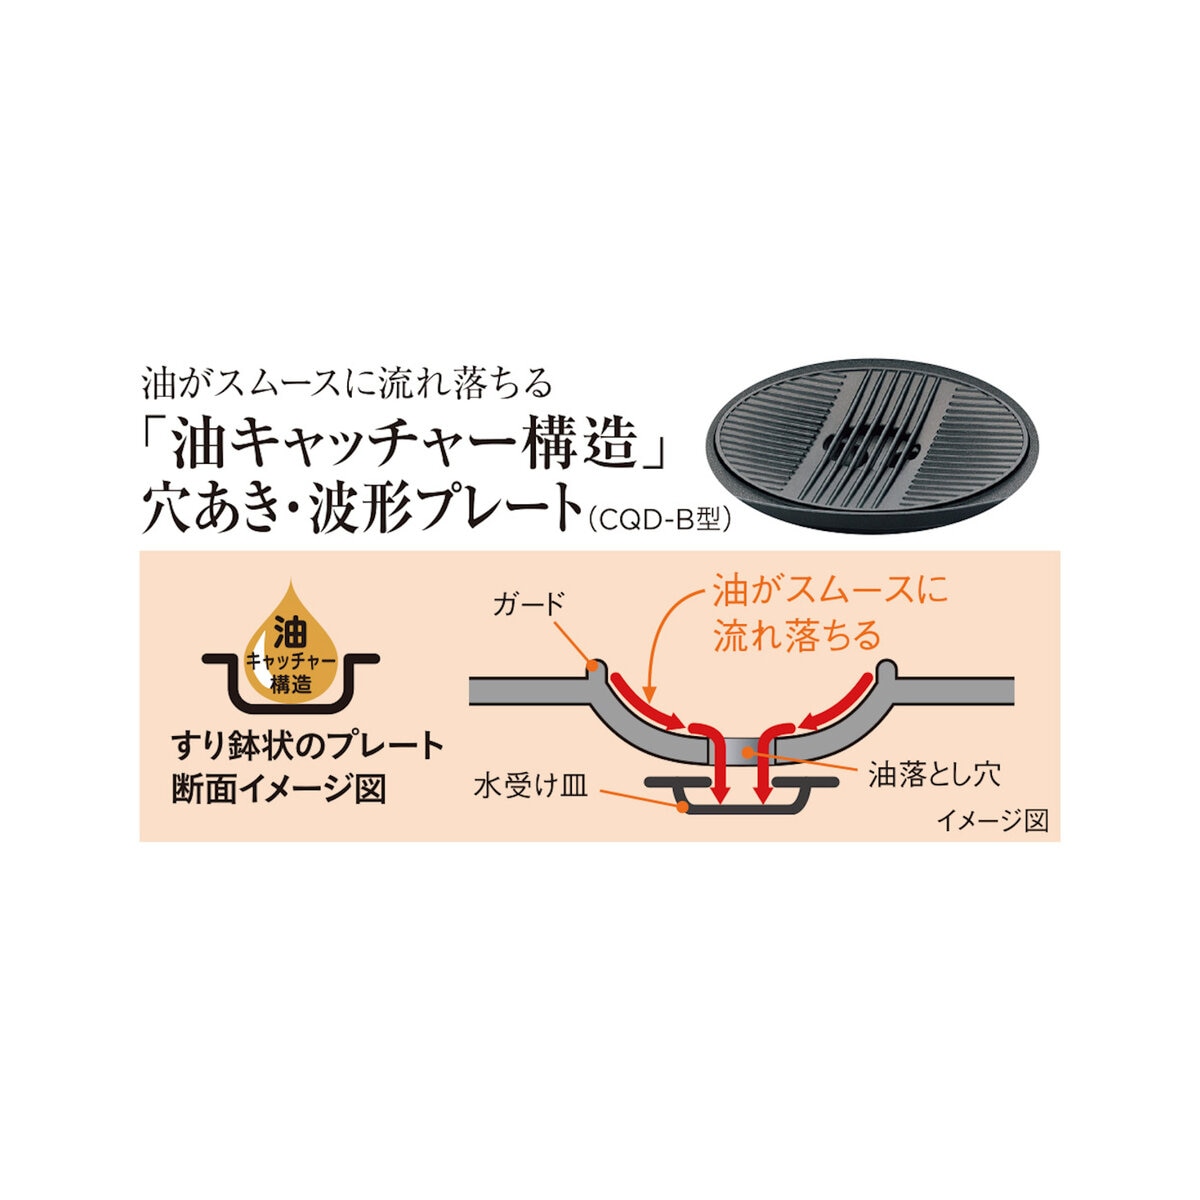 タイガー グリル鍋 5L CQD-300TH | Costco Japan